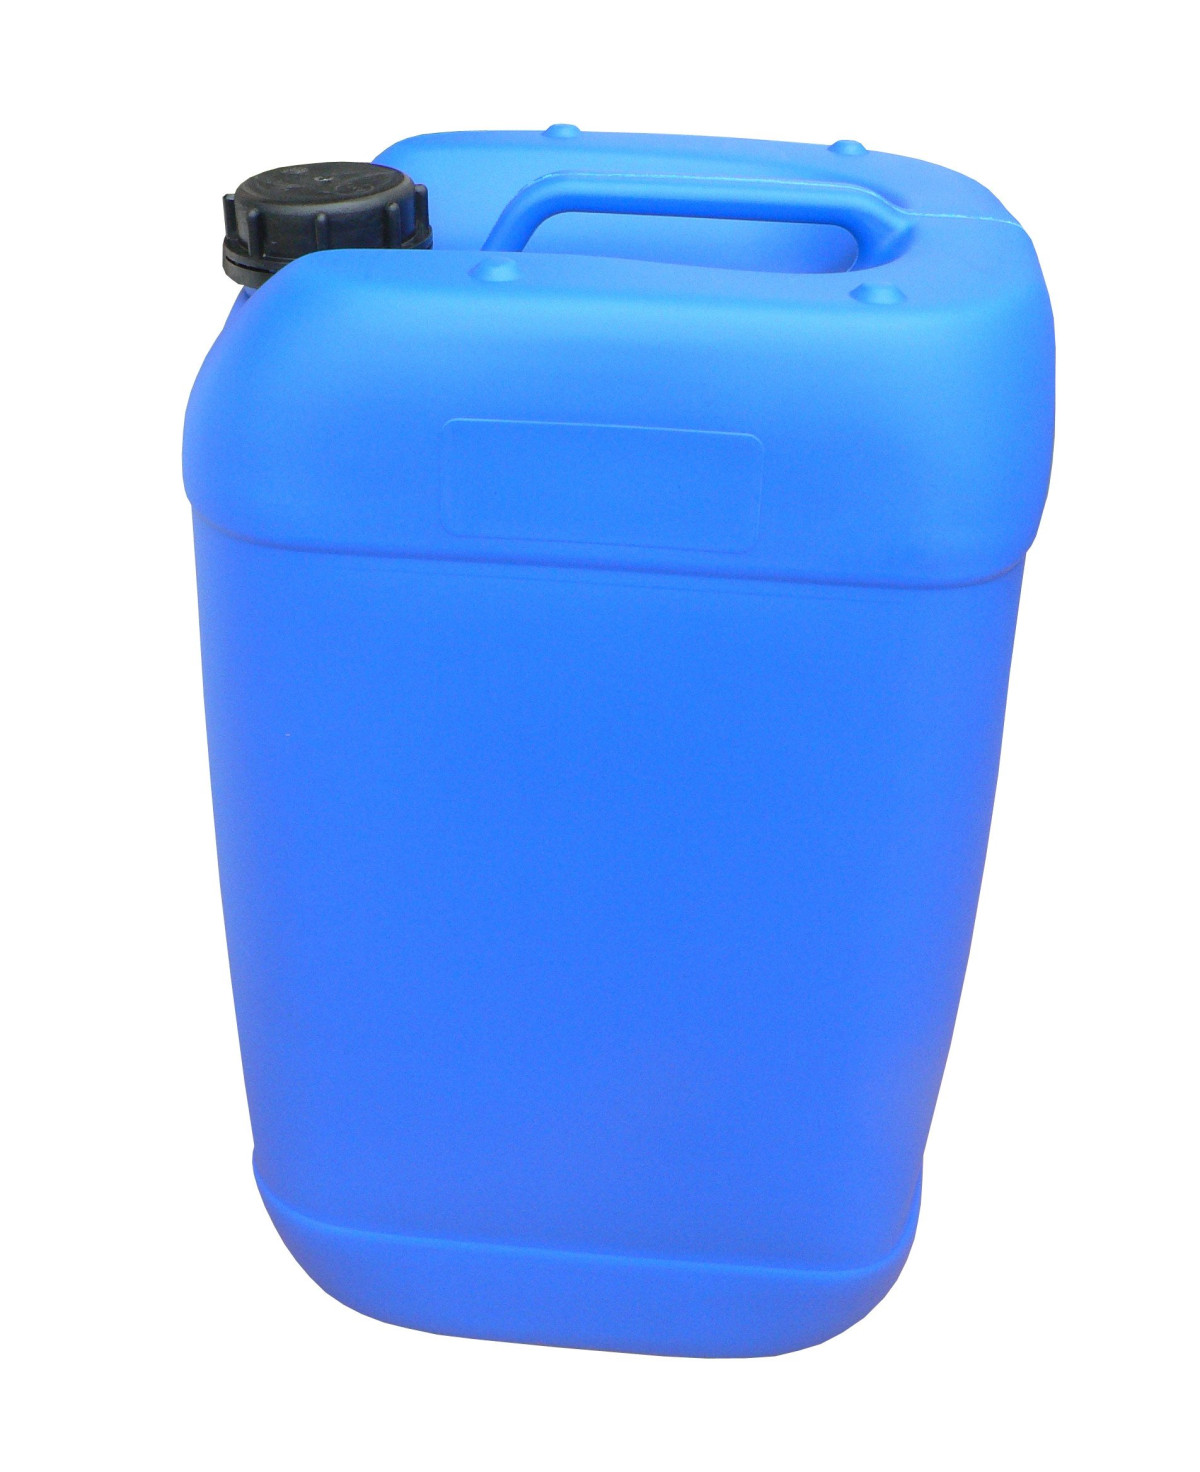 Champs Plastic 3gl Jar W/Spout Blue - Case - 4 Units